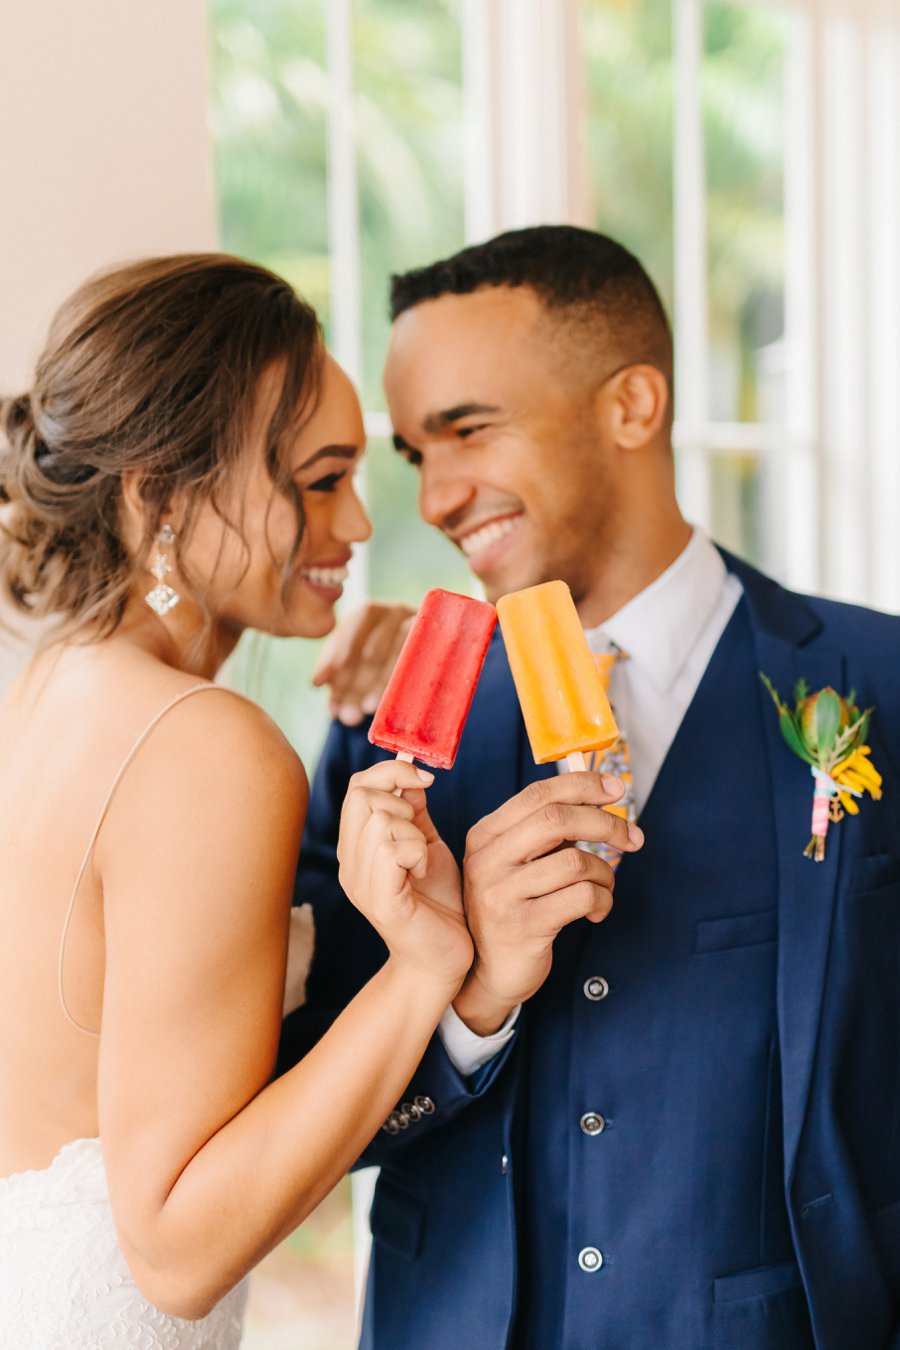 Colorful & Elegant Tropical Wedding Ideas via TheELD.com